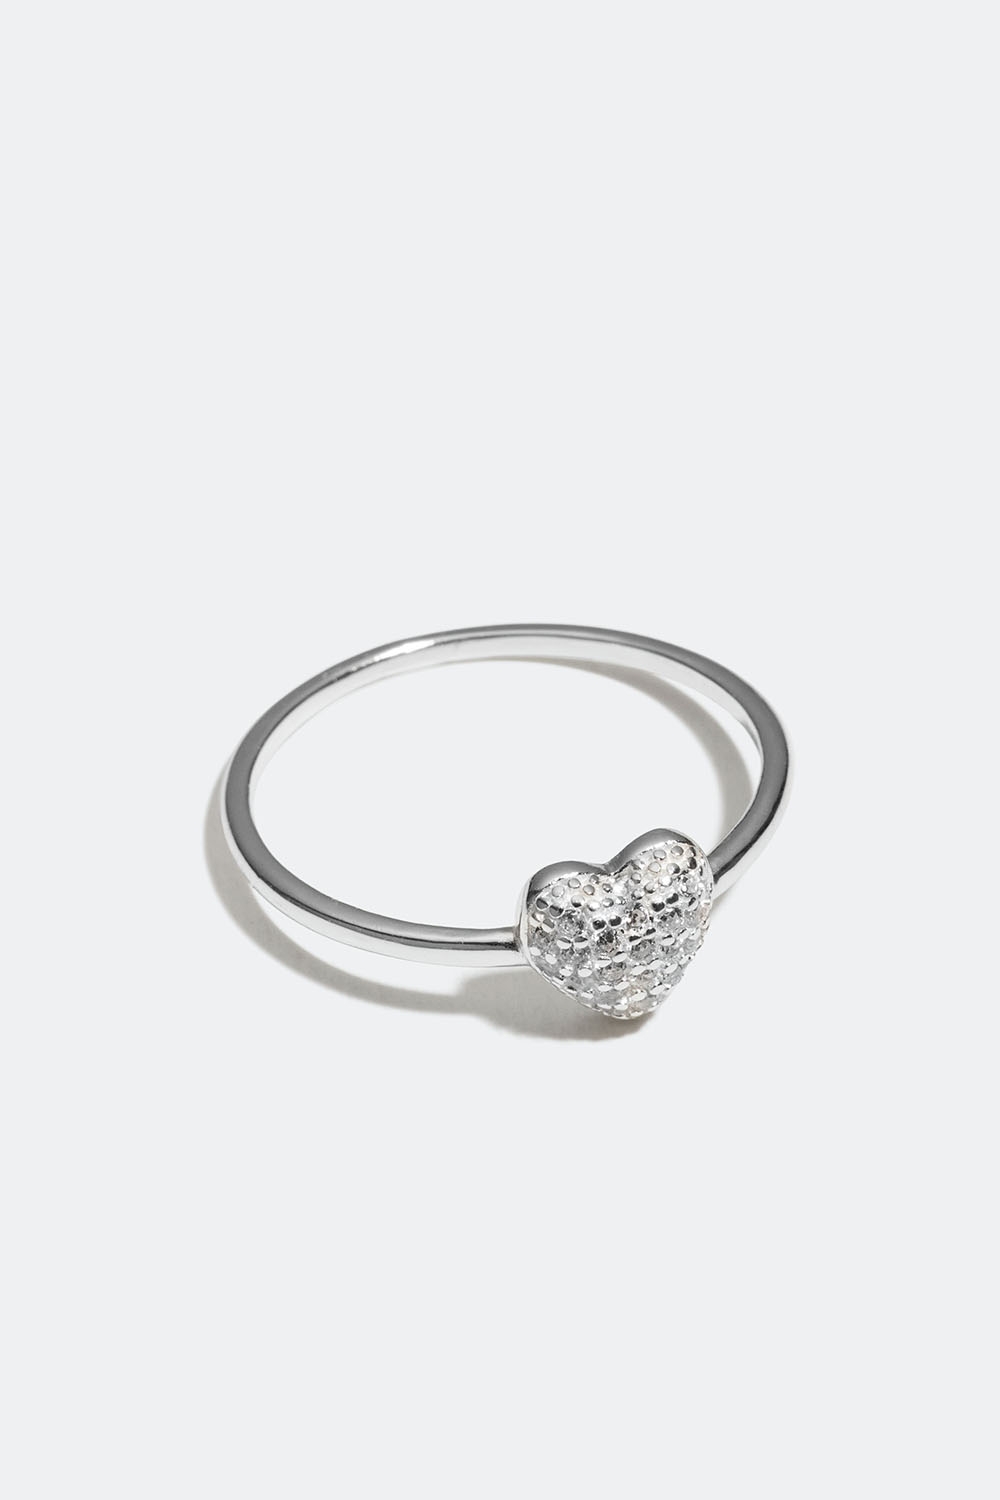 Ring i ægte sølv med hjerter og kubisk zirkonia i gruppen Smykker / Ringe / Tynde hos Glitter (556000661016)